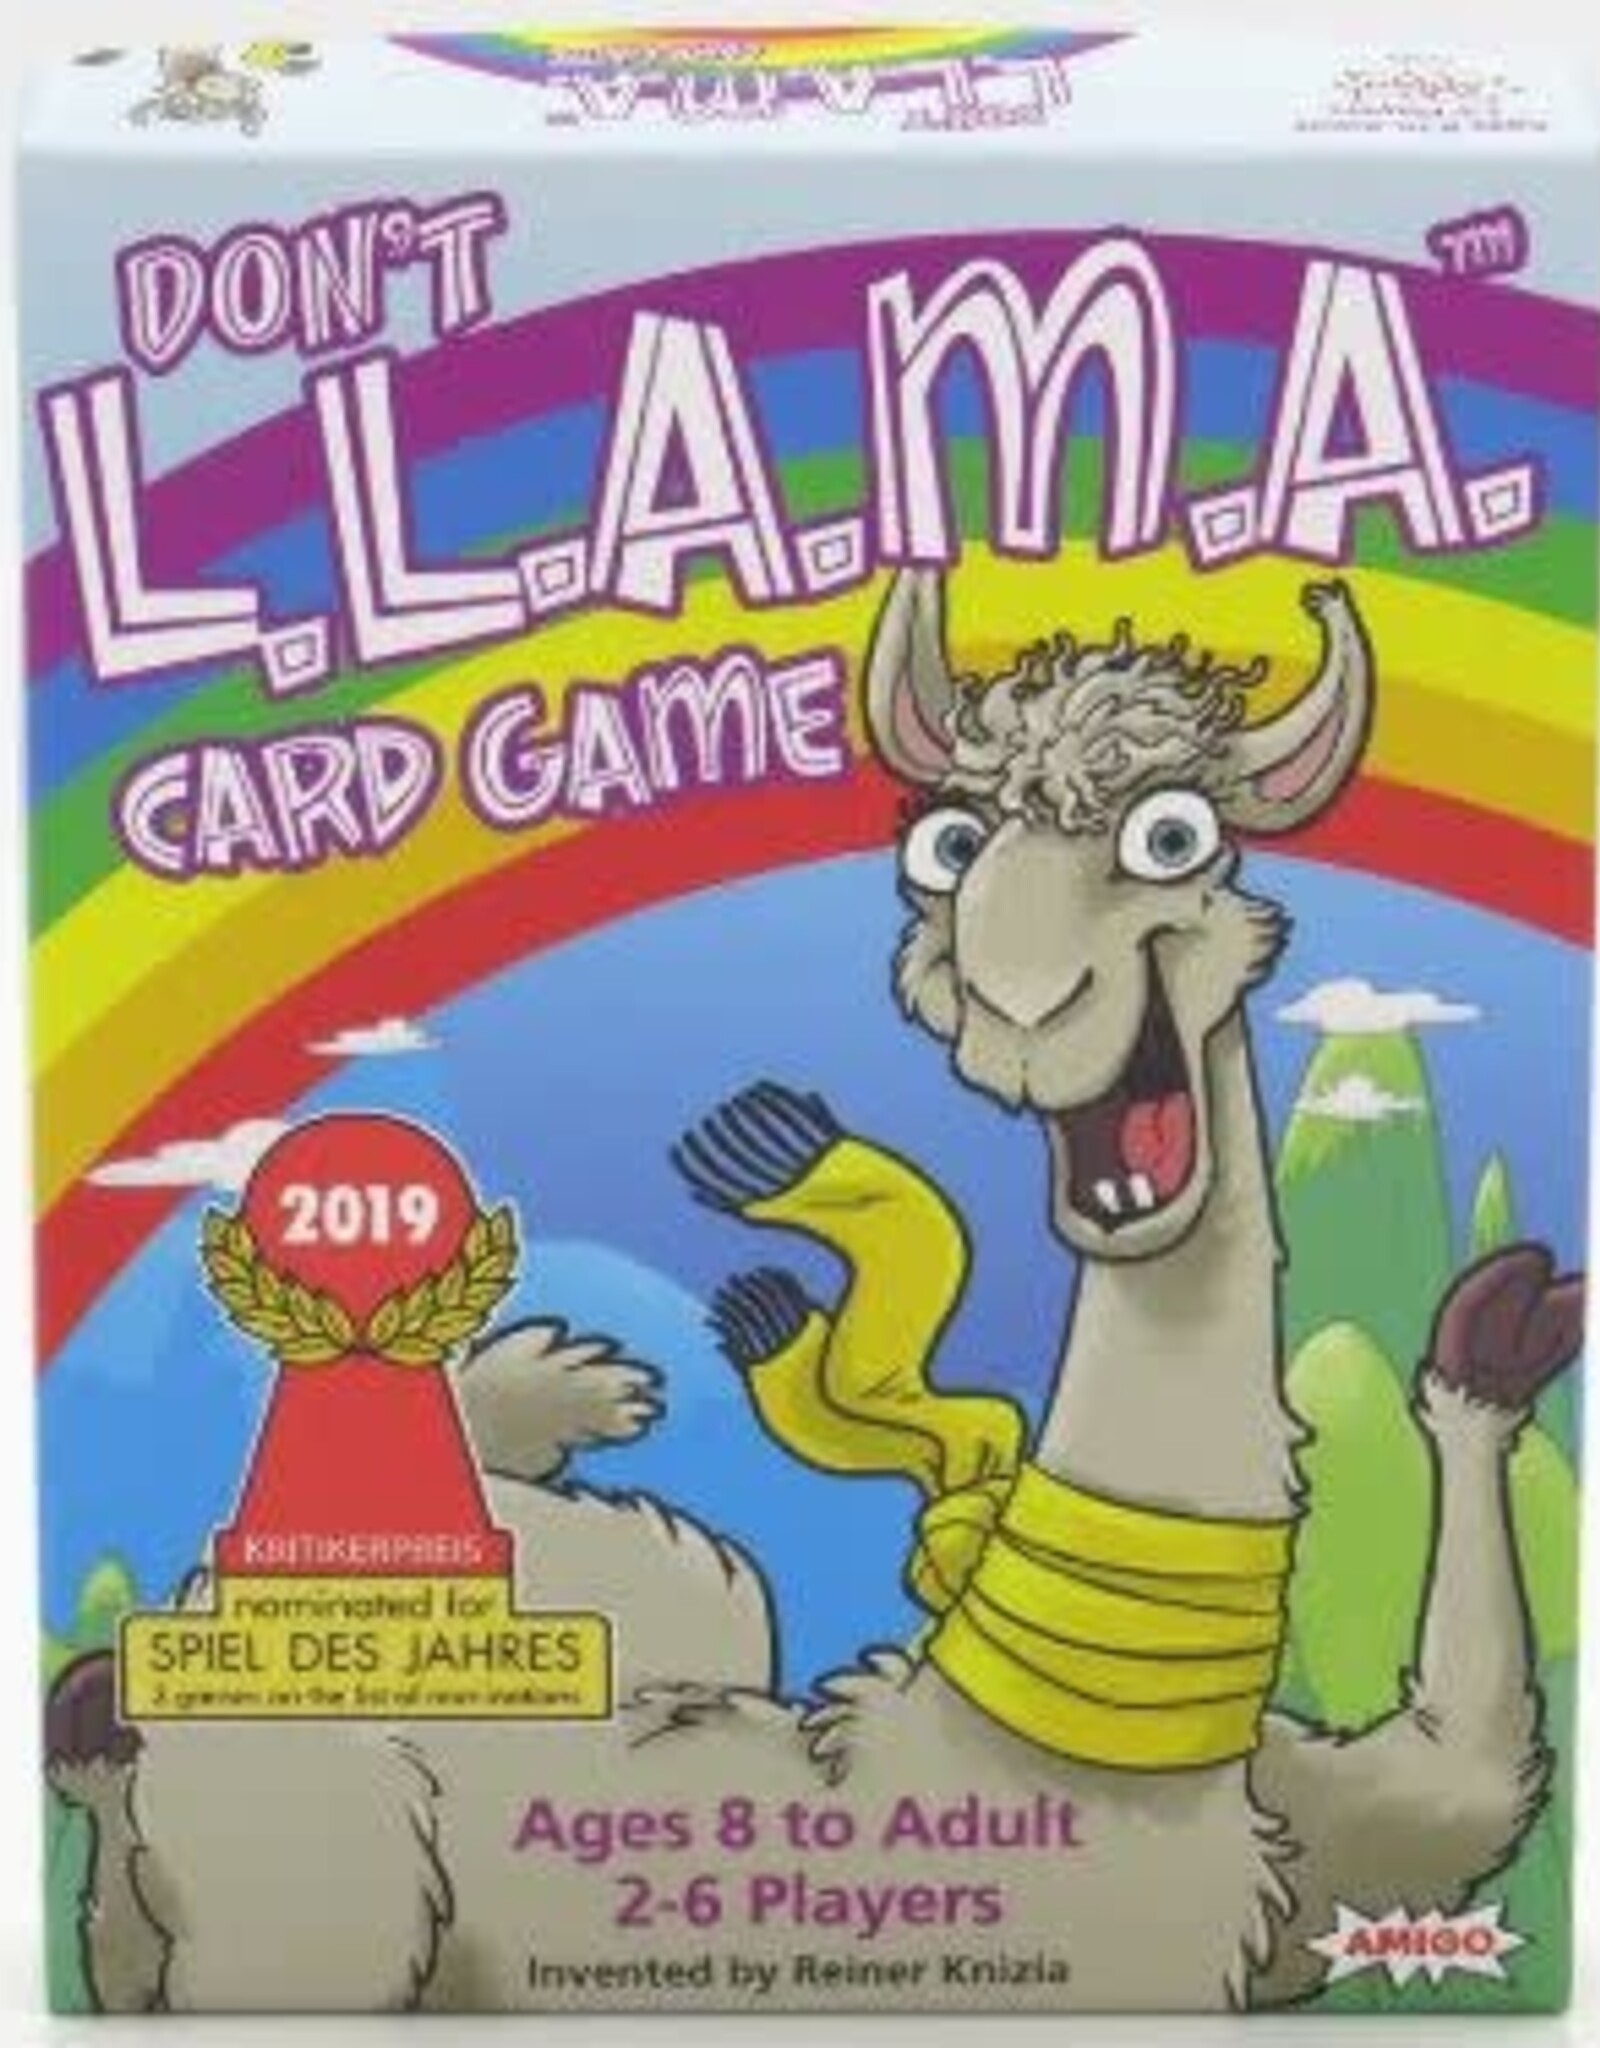 Don't L.L.A.M.A. Card Game